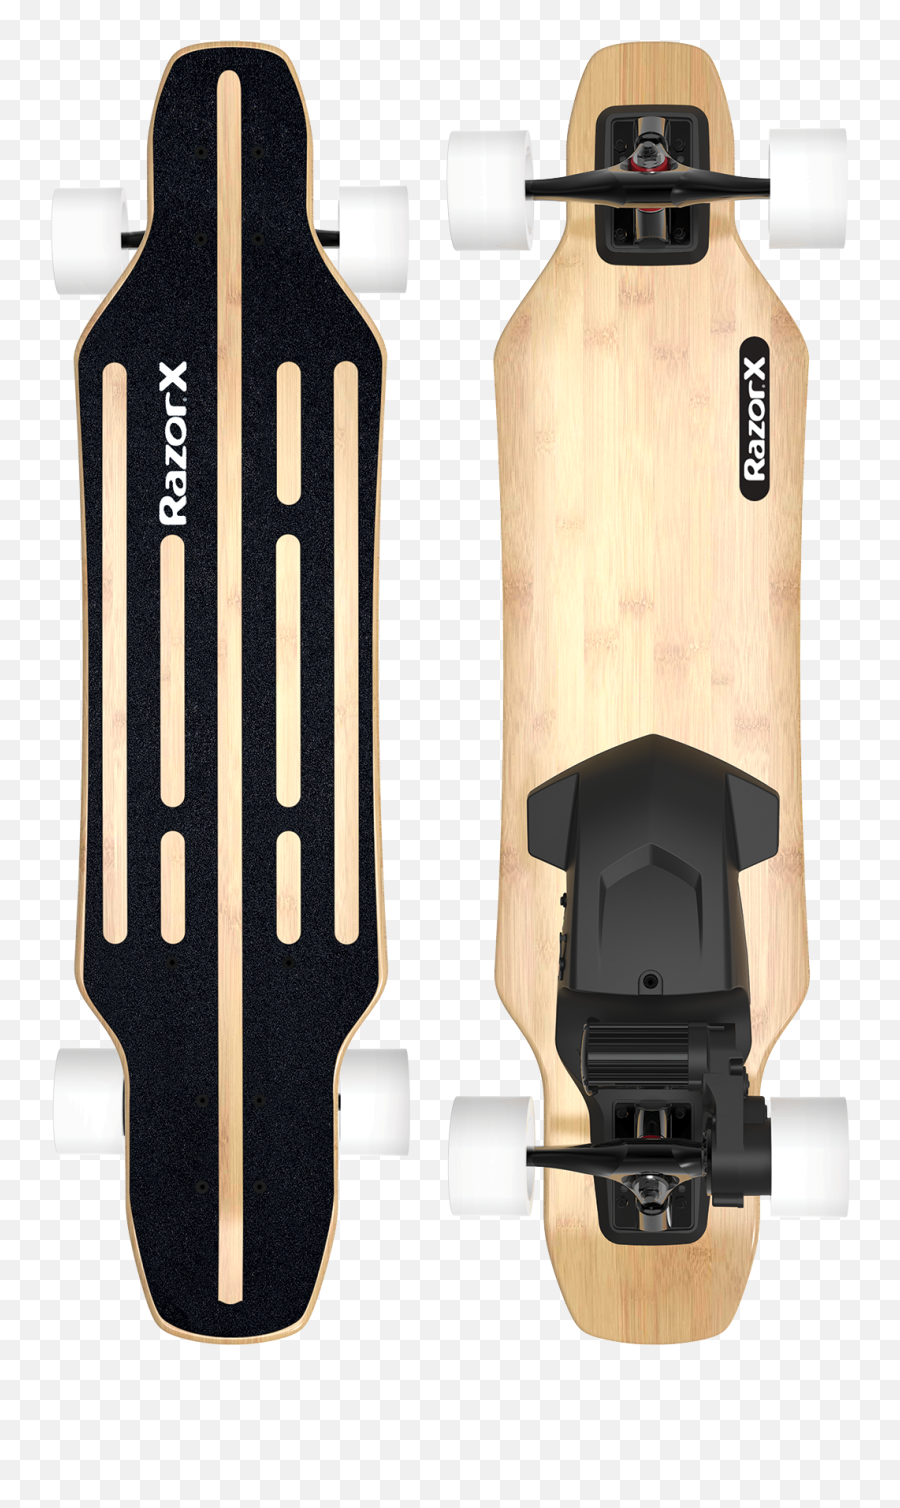 Razorx Longboard Electric Skateboard - Razor Razor Ultra Pro Png,Skateboard Transparent